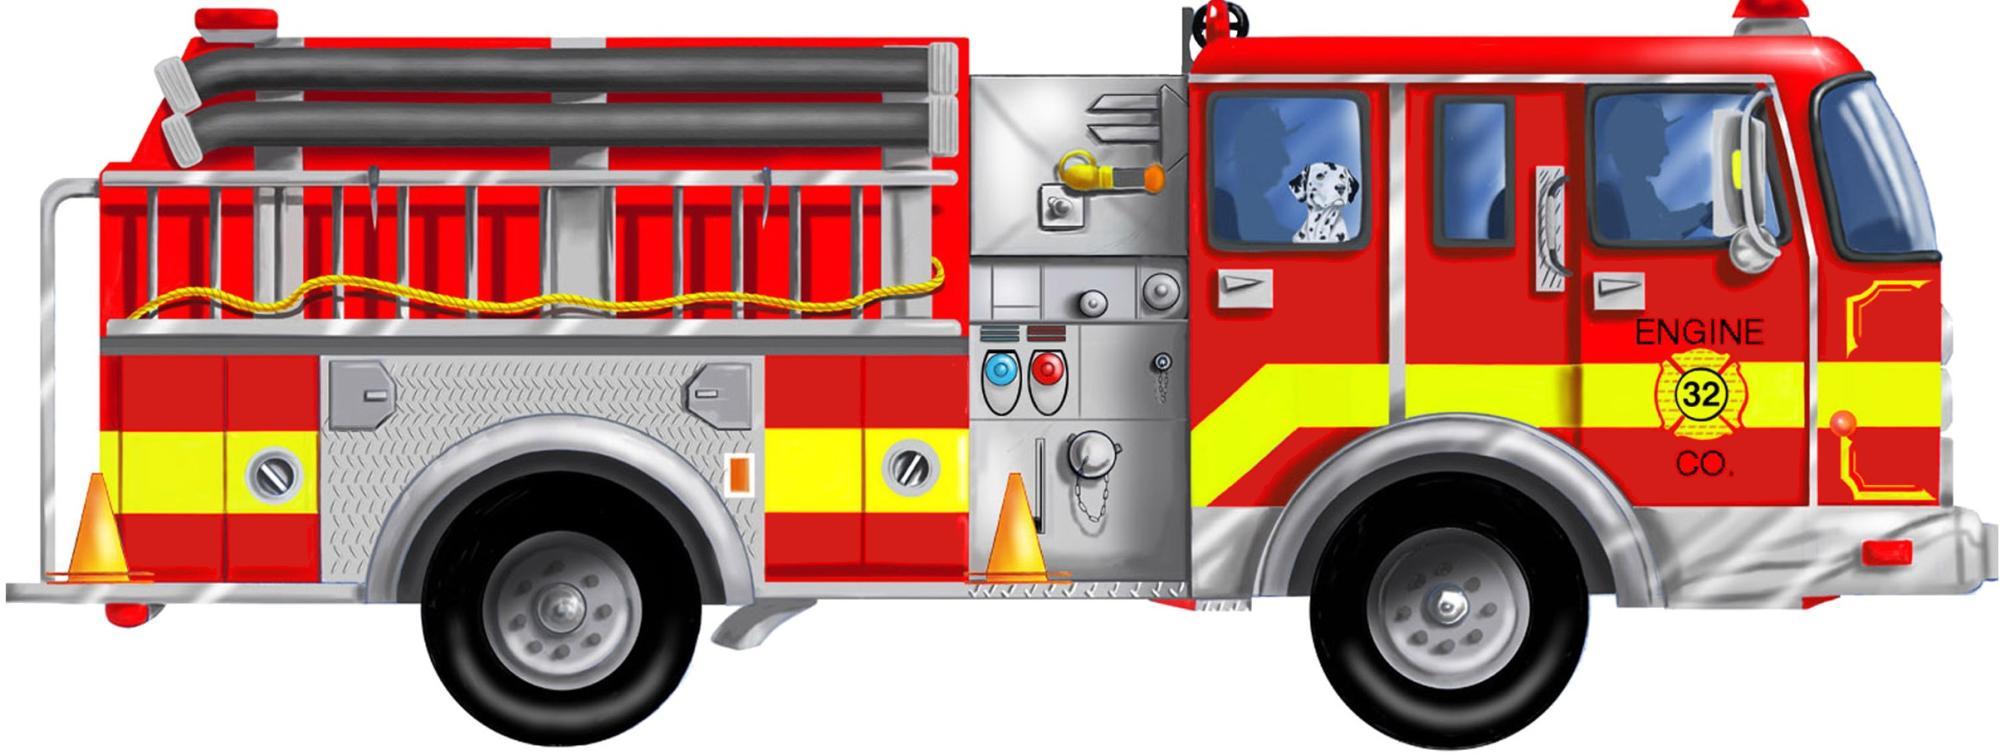 CARTOON IMAGES, ART INSERTS » firetruck (18)